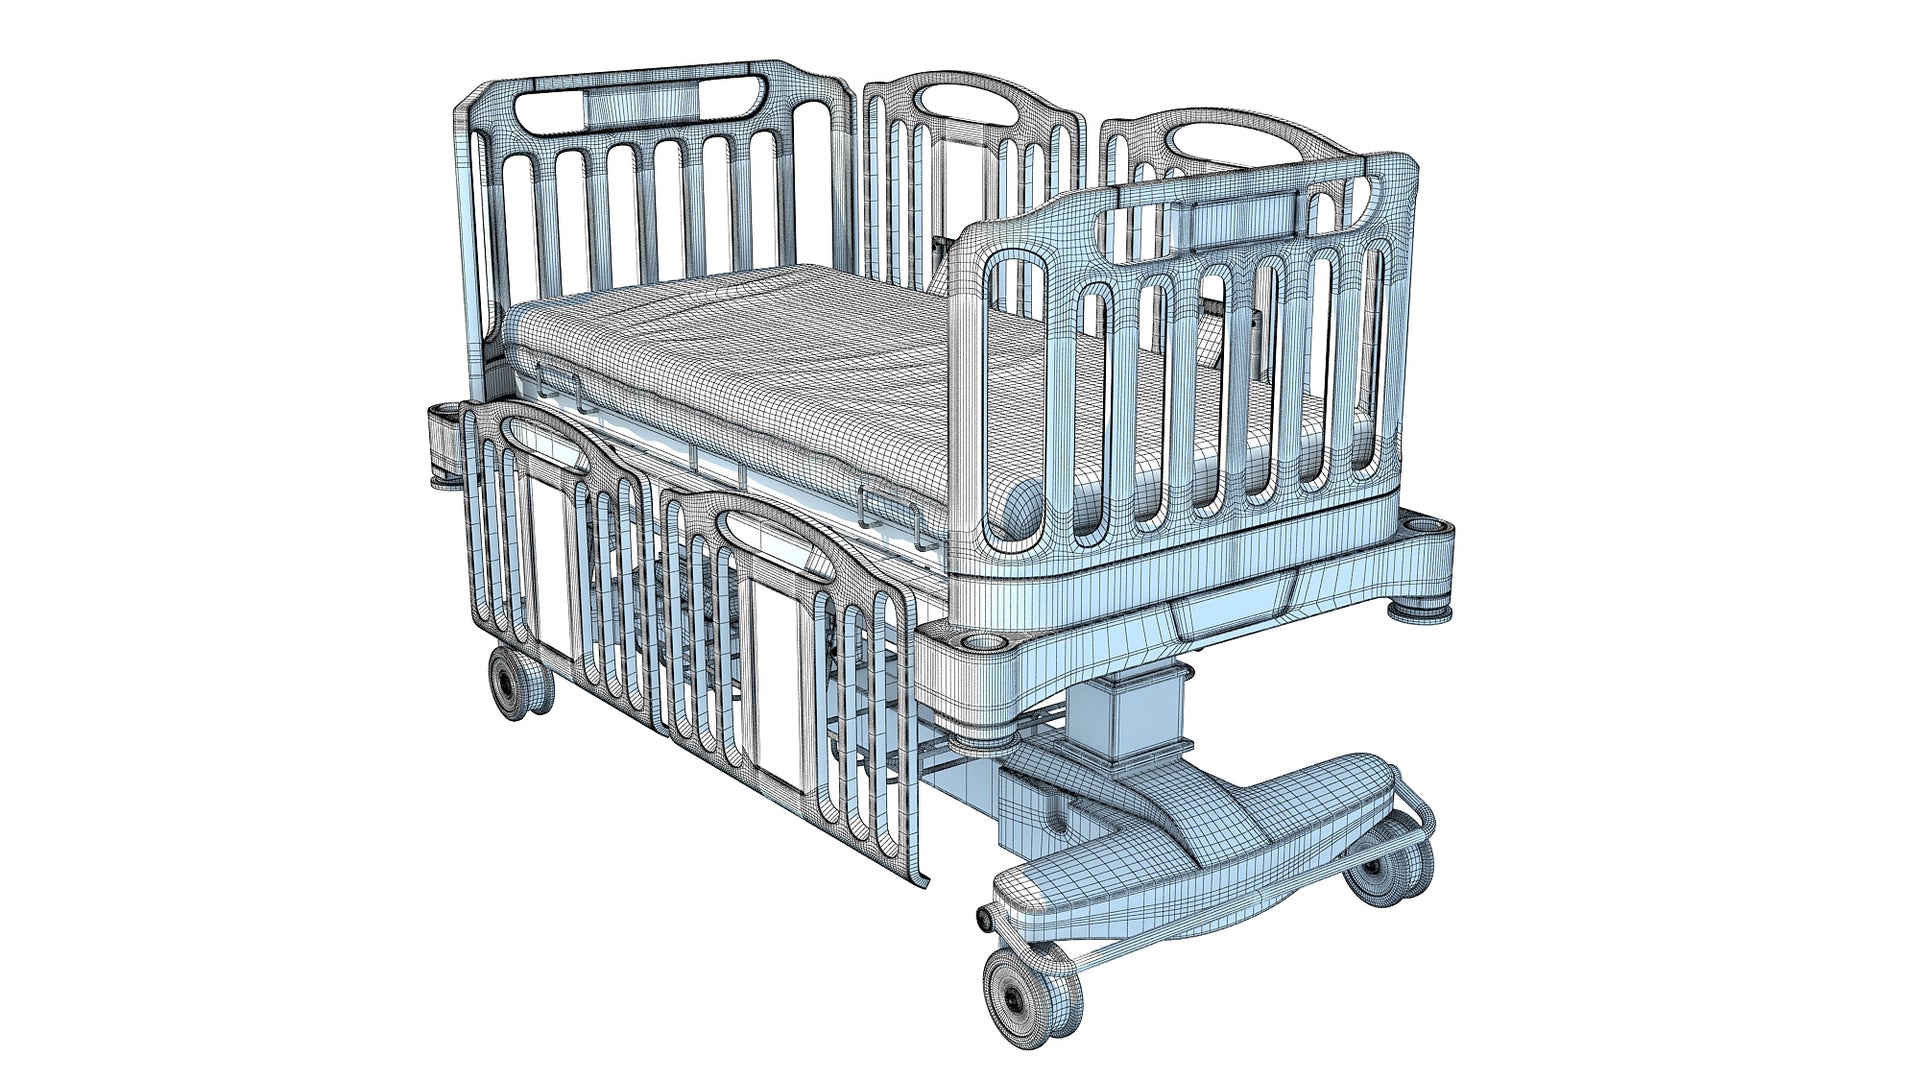 Medical Hospital Bed for Children